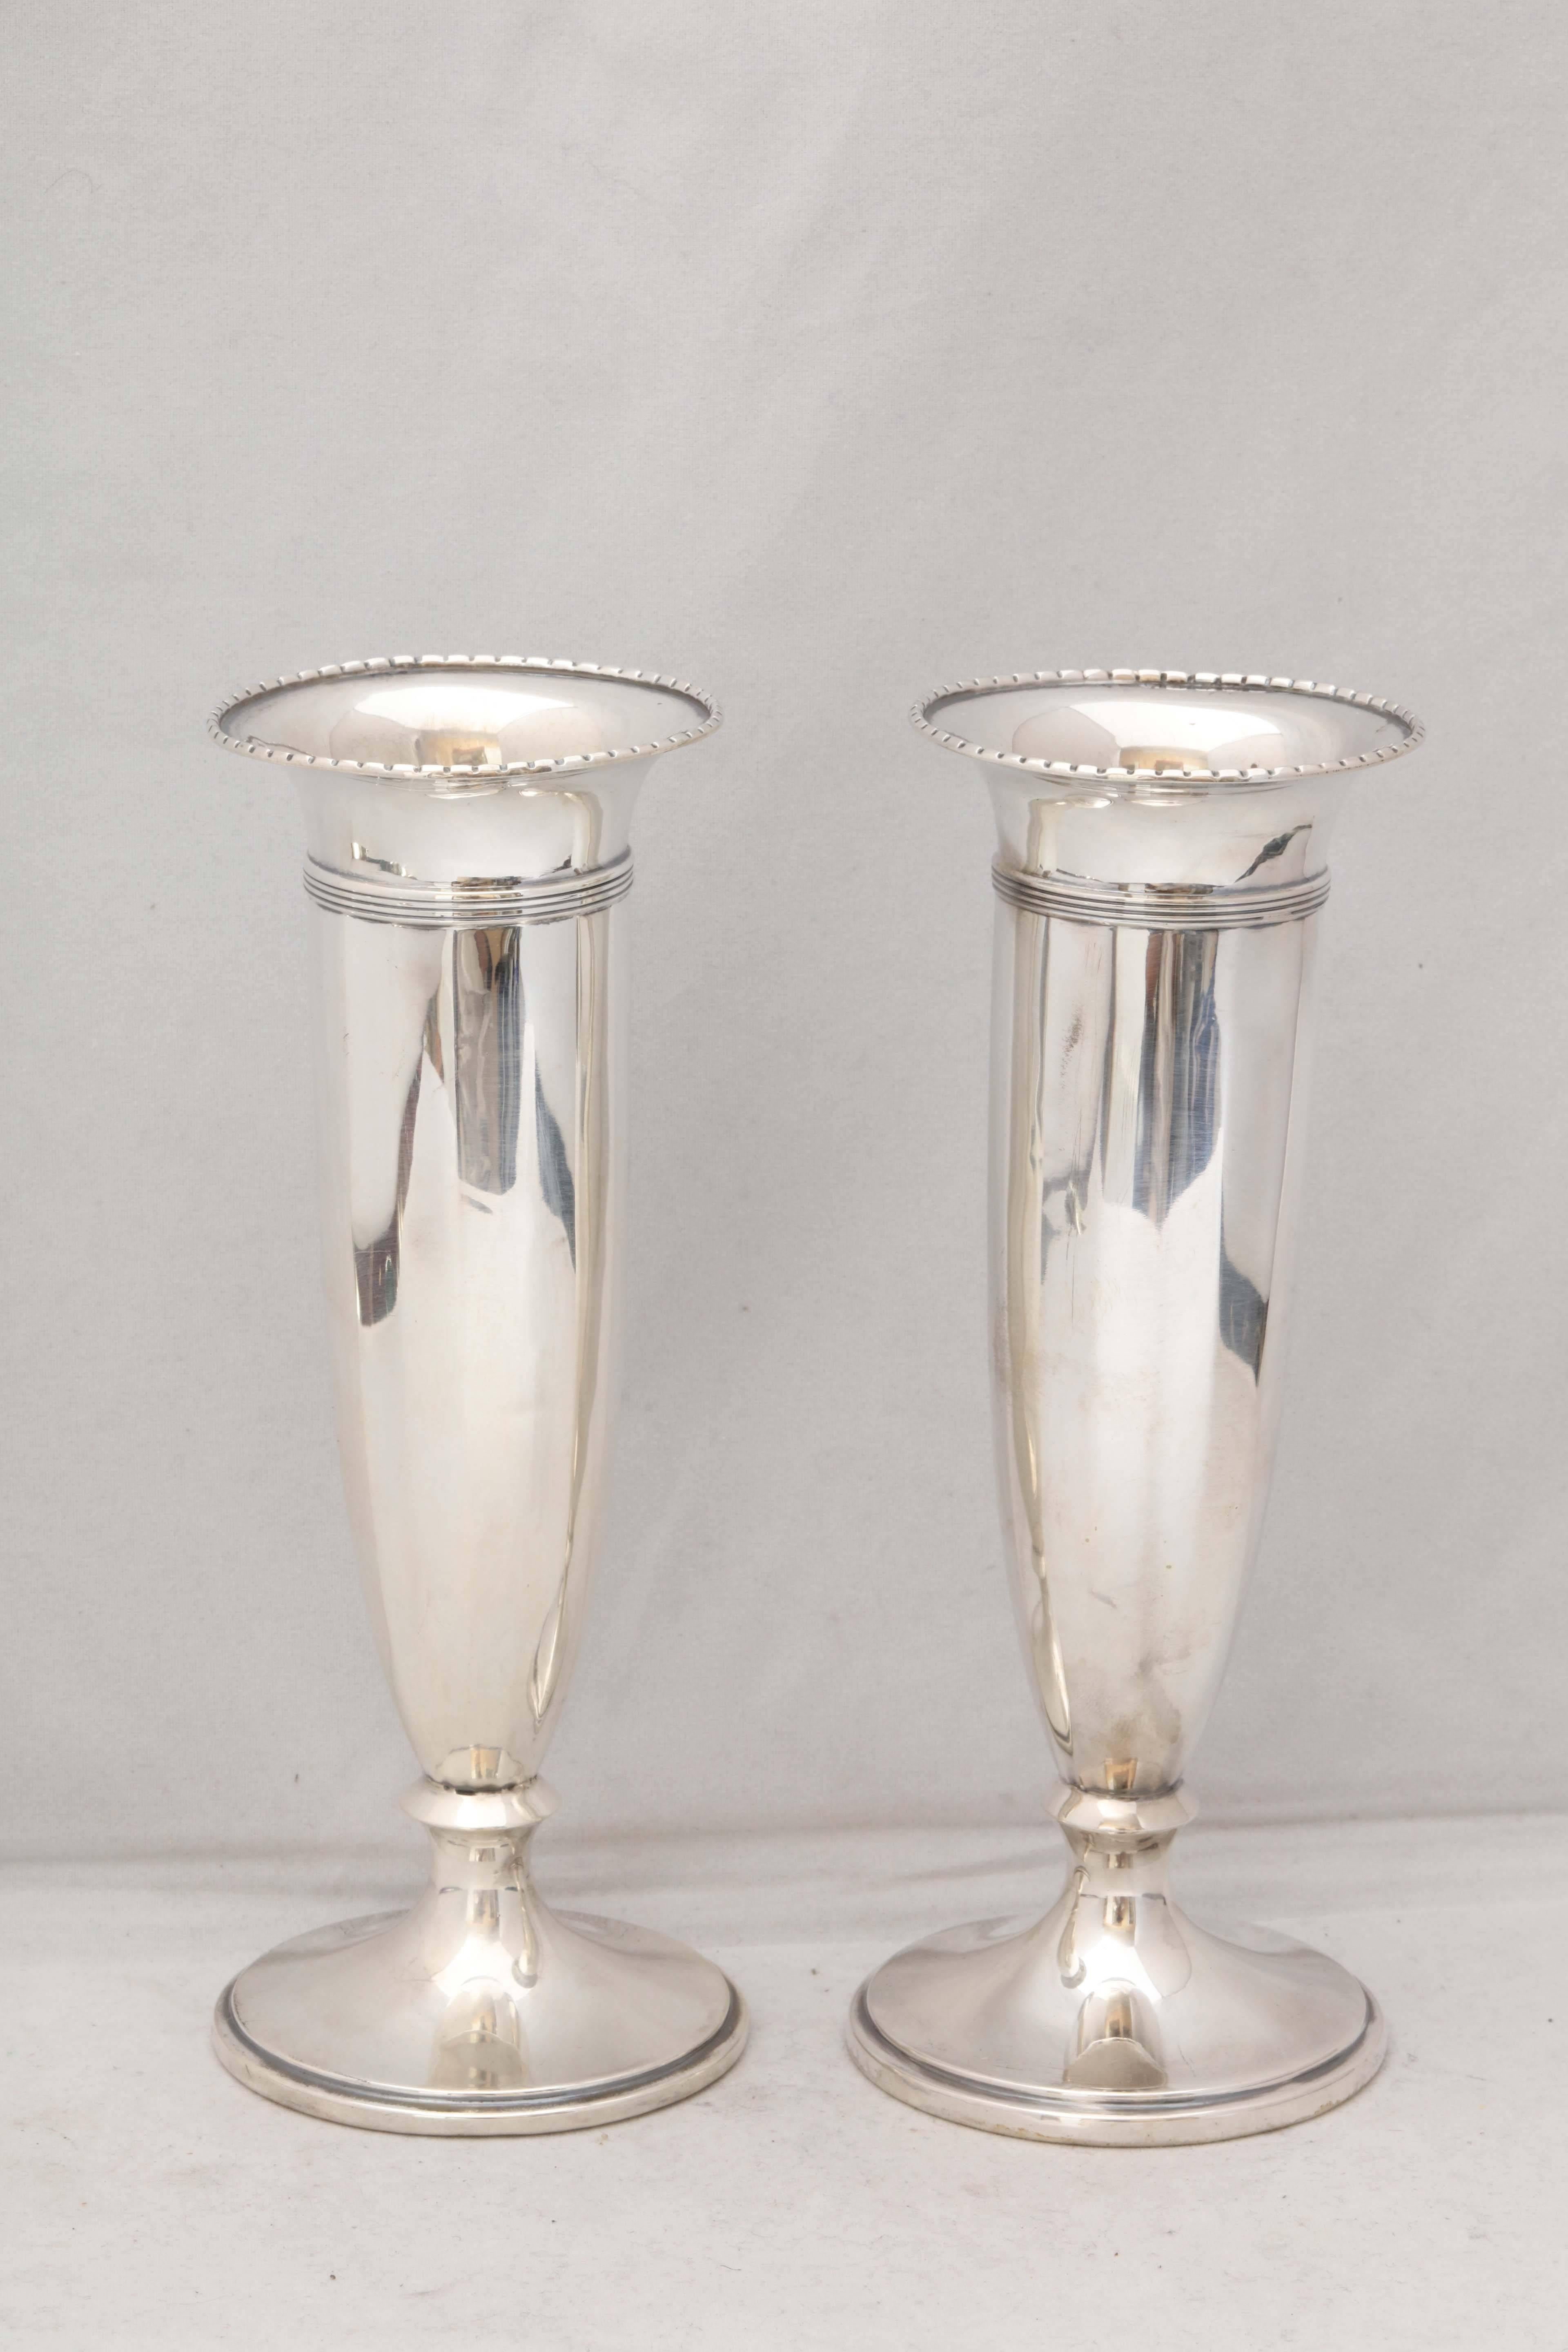 Lovely pair of Edwardian, sterling silver vases, Birmingham, England, 1923, Adie Bros. - makers. Each is 7